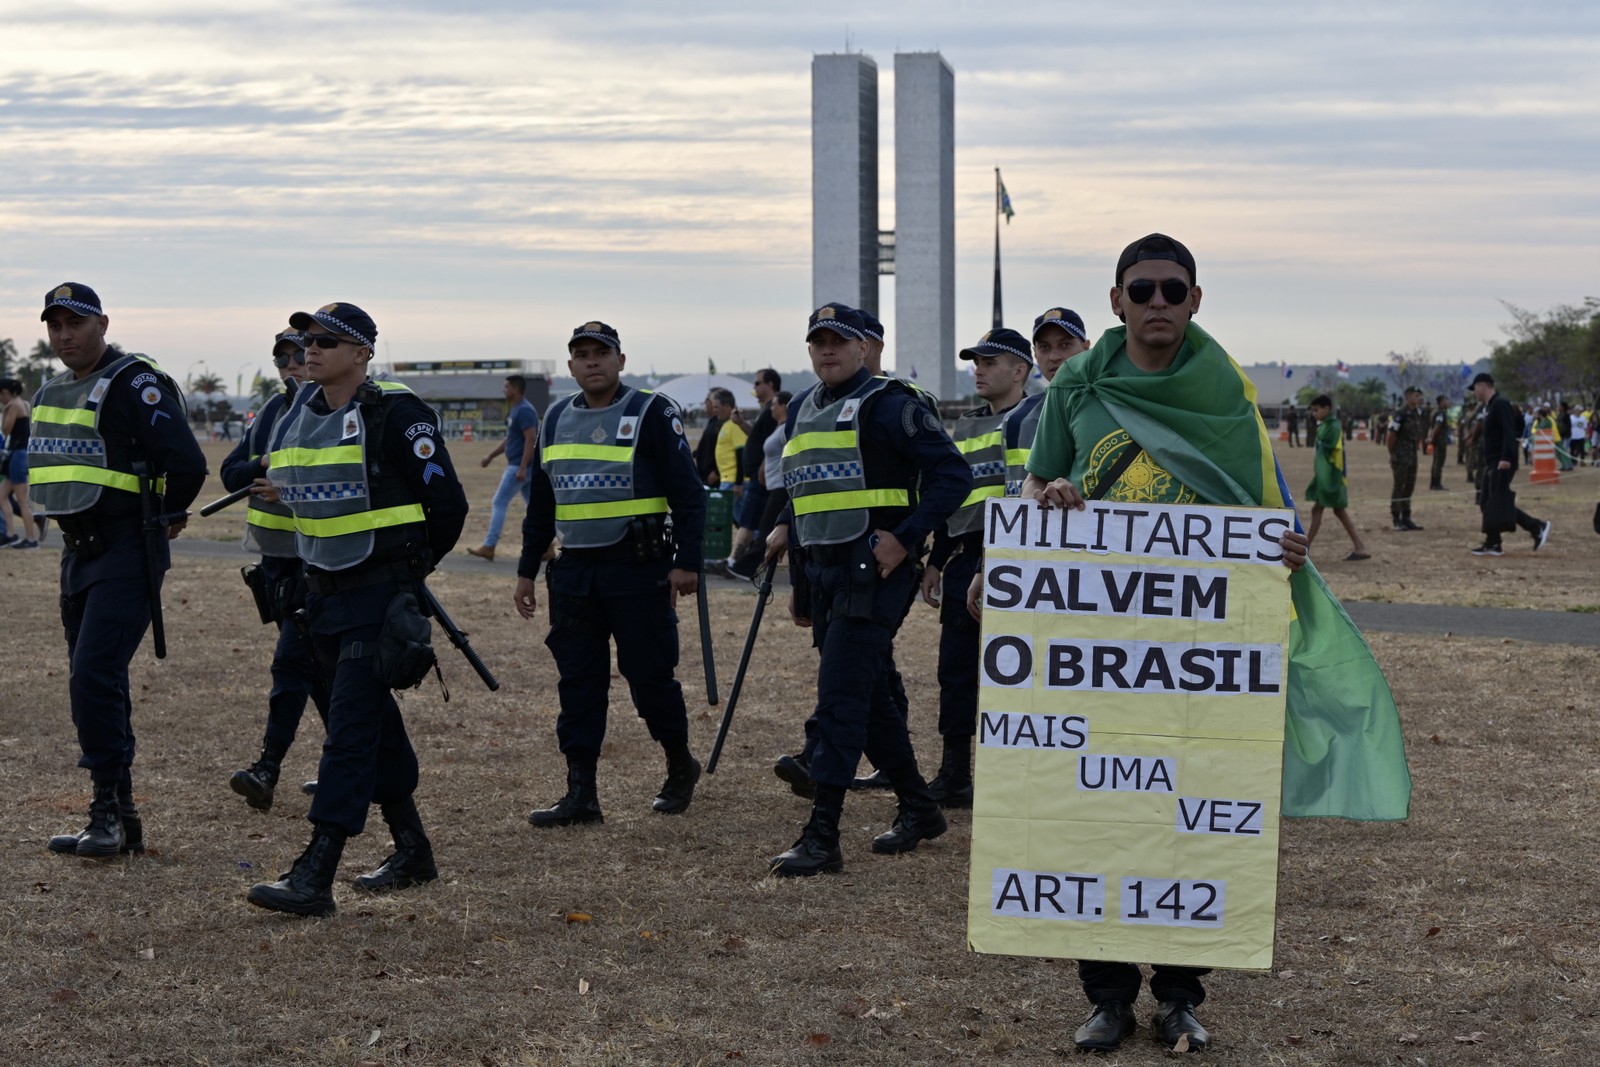 Apoiador do presidente Bolsonaro exibe cartaz em que pede intervenção militar para "salvar" o país  — Foto: Cadu Gomes/Agência O Globo